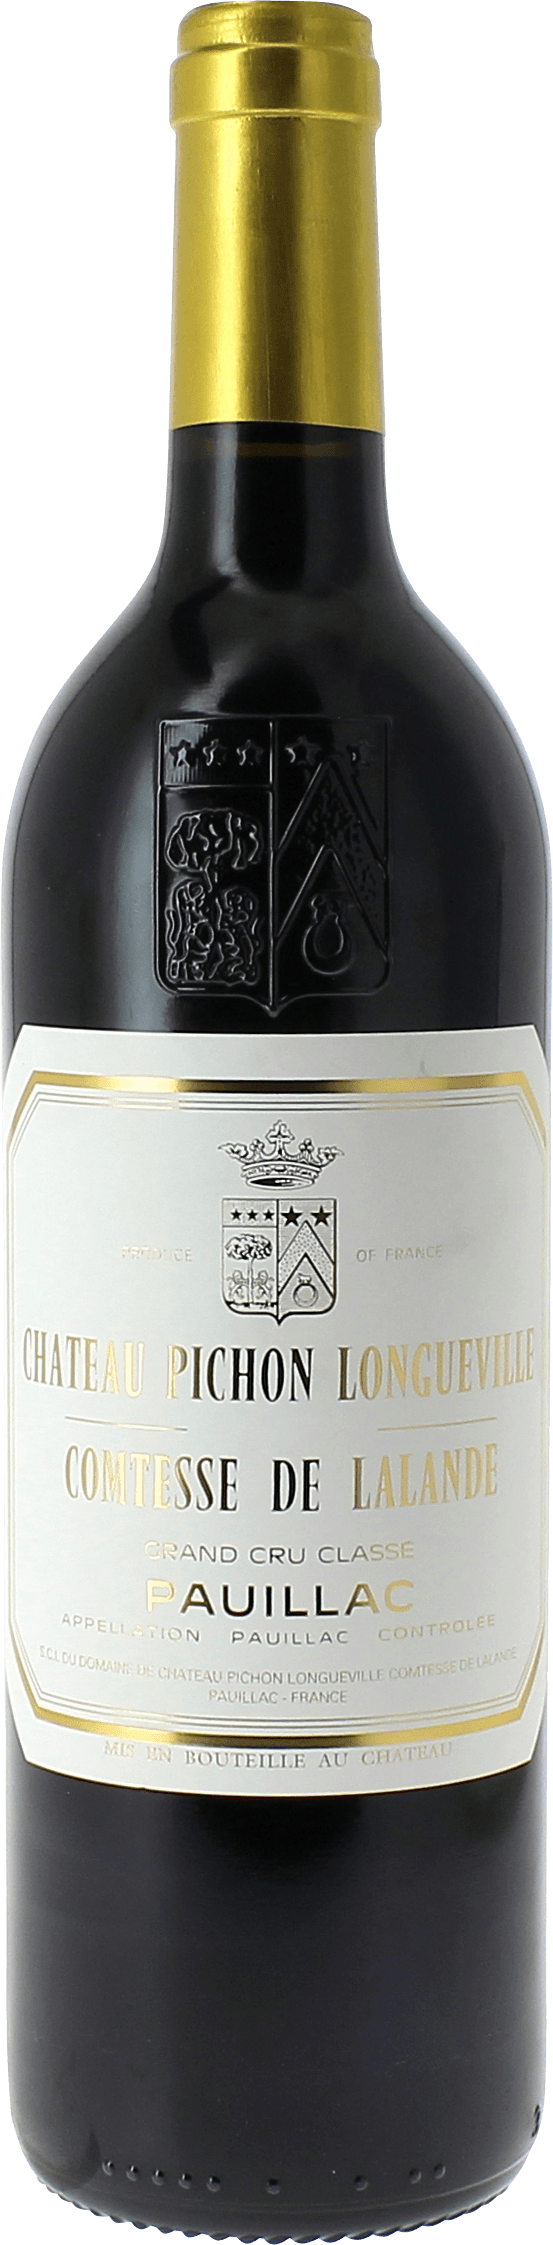 Pichon comtesse de lalande 1992 2me Grand cru class Pauillac, Bordeaux rouge